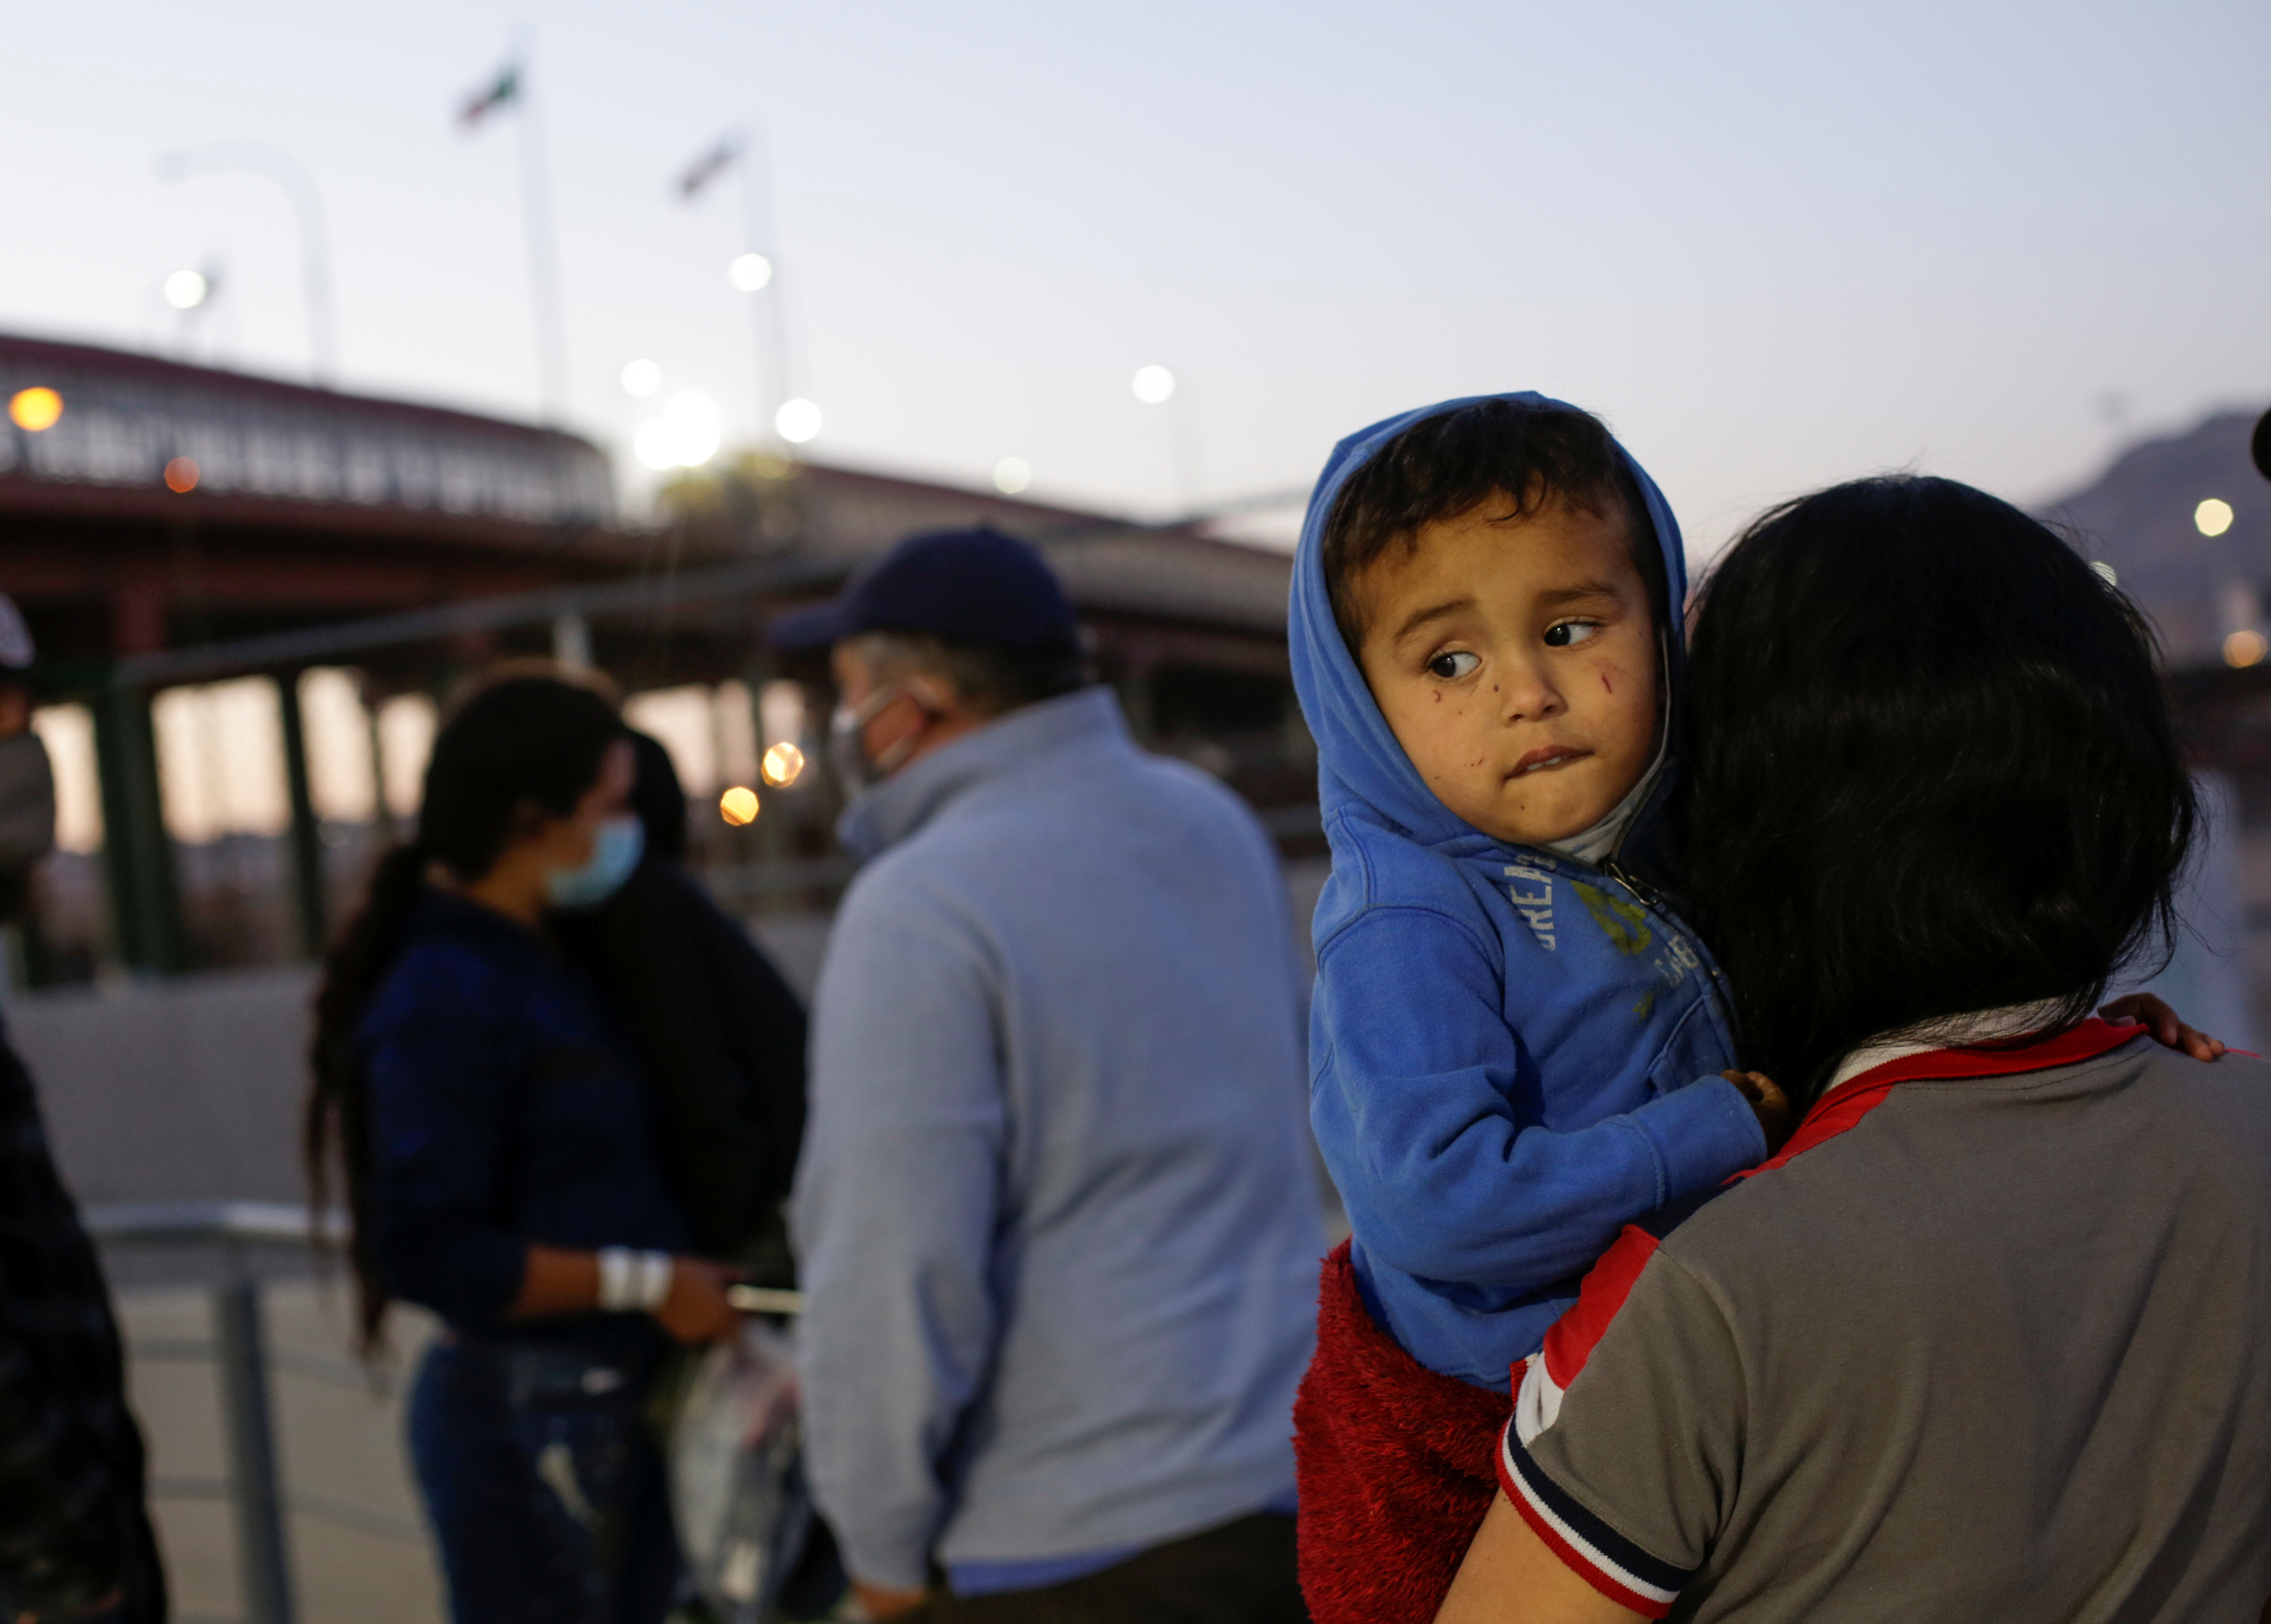 México encuentra más de 300 migrantes hacinados en camiones, entre ellos niños no acompañados